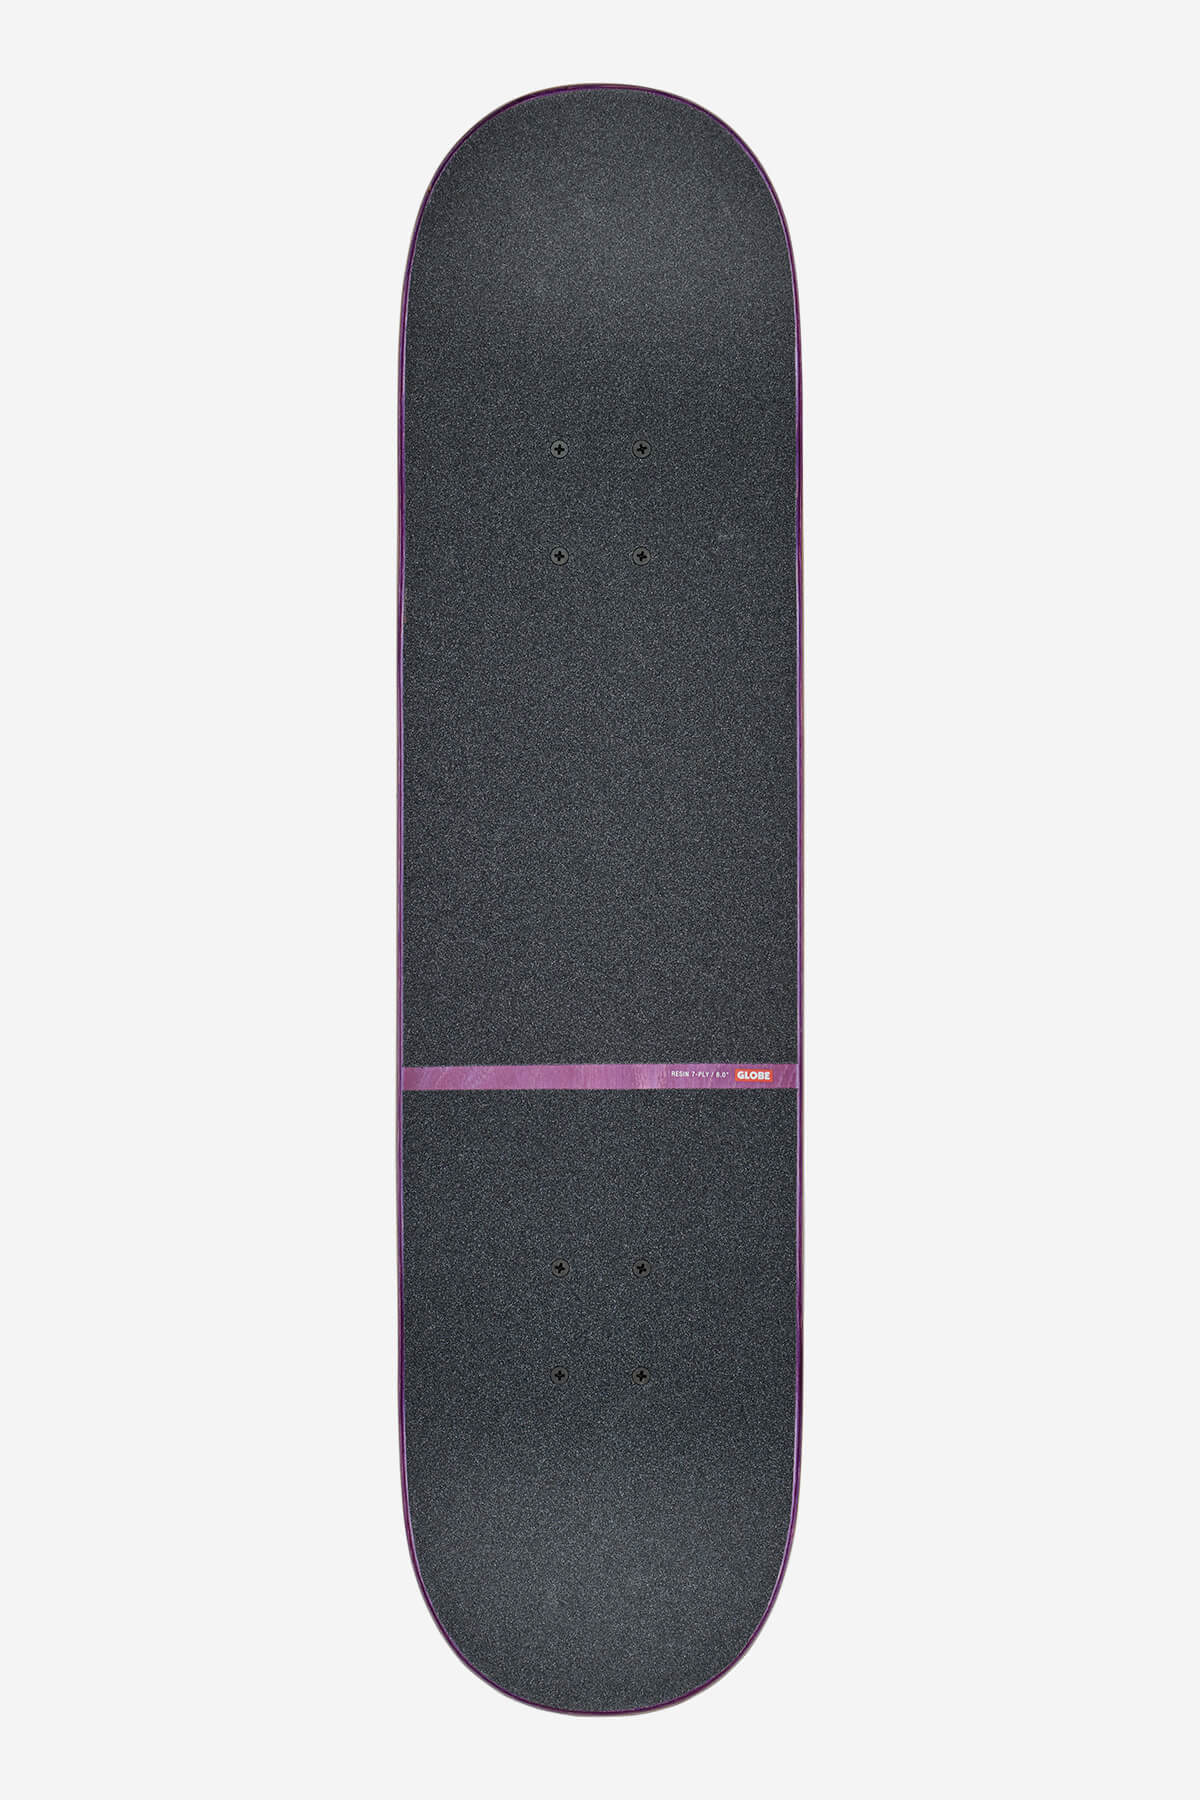 Globe - G1 Orbit - Super Natural - 8.0" complet Skateboard